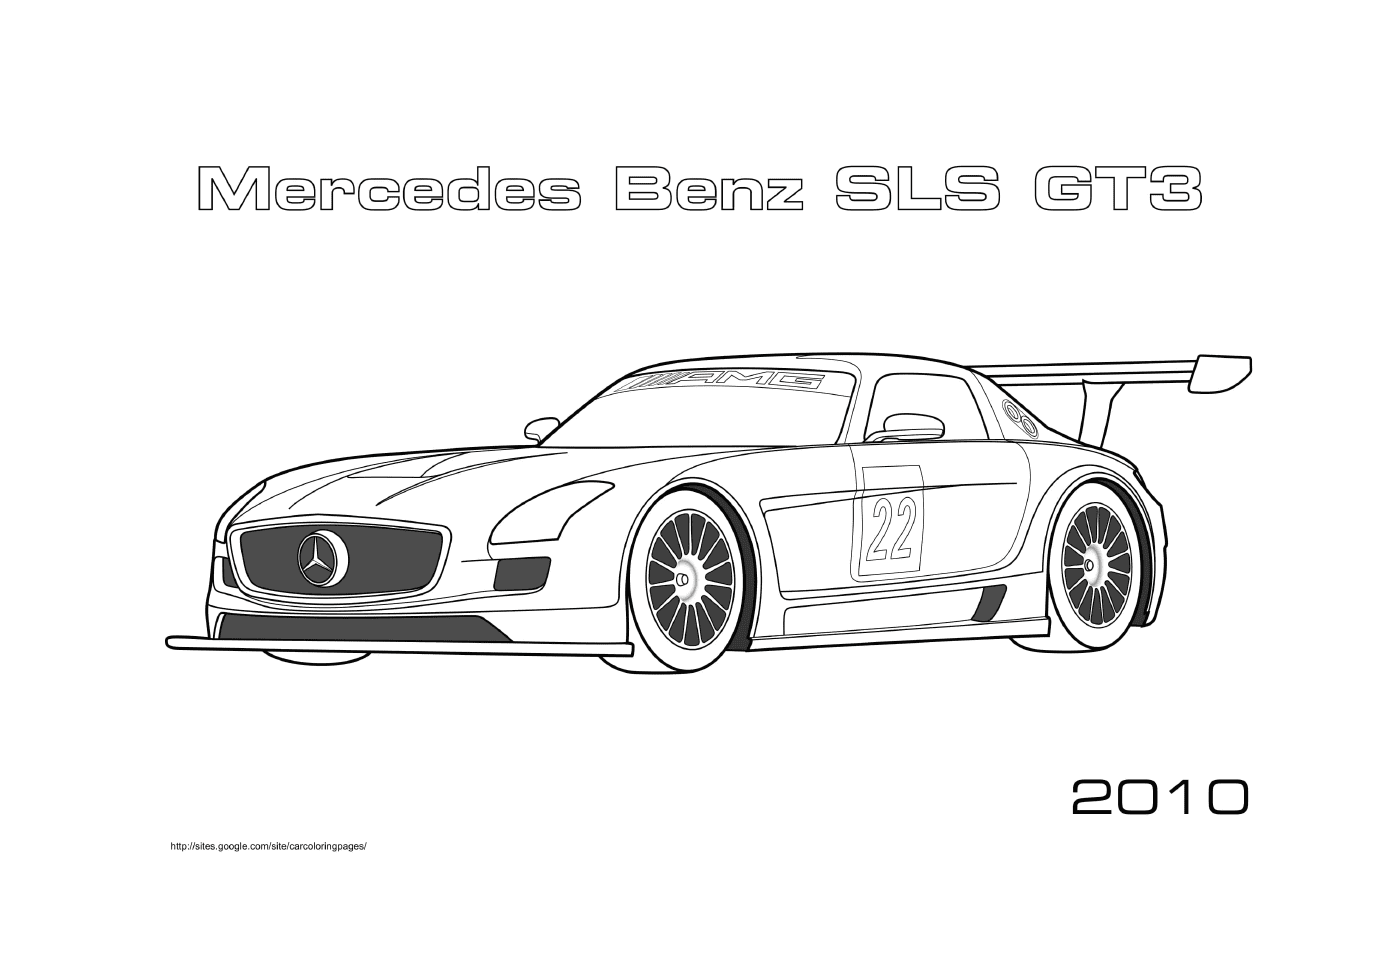  Mercedes Benz SLS AMG, racing car 